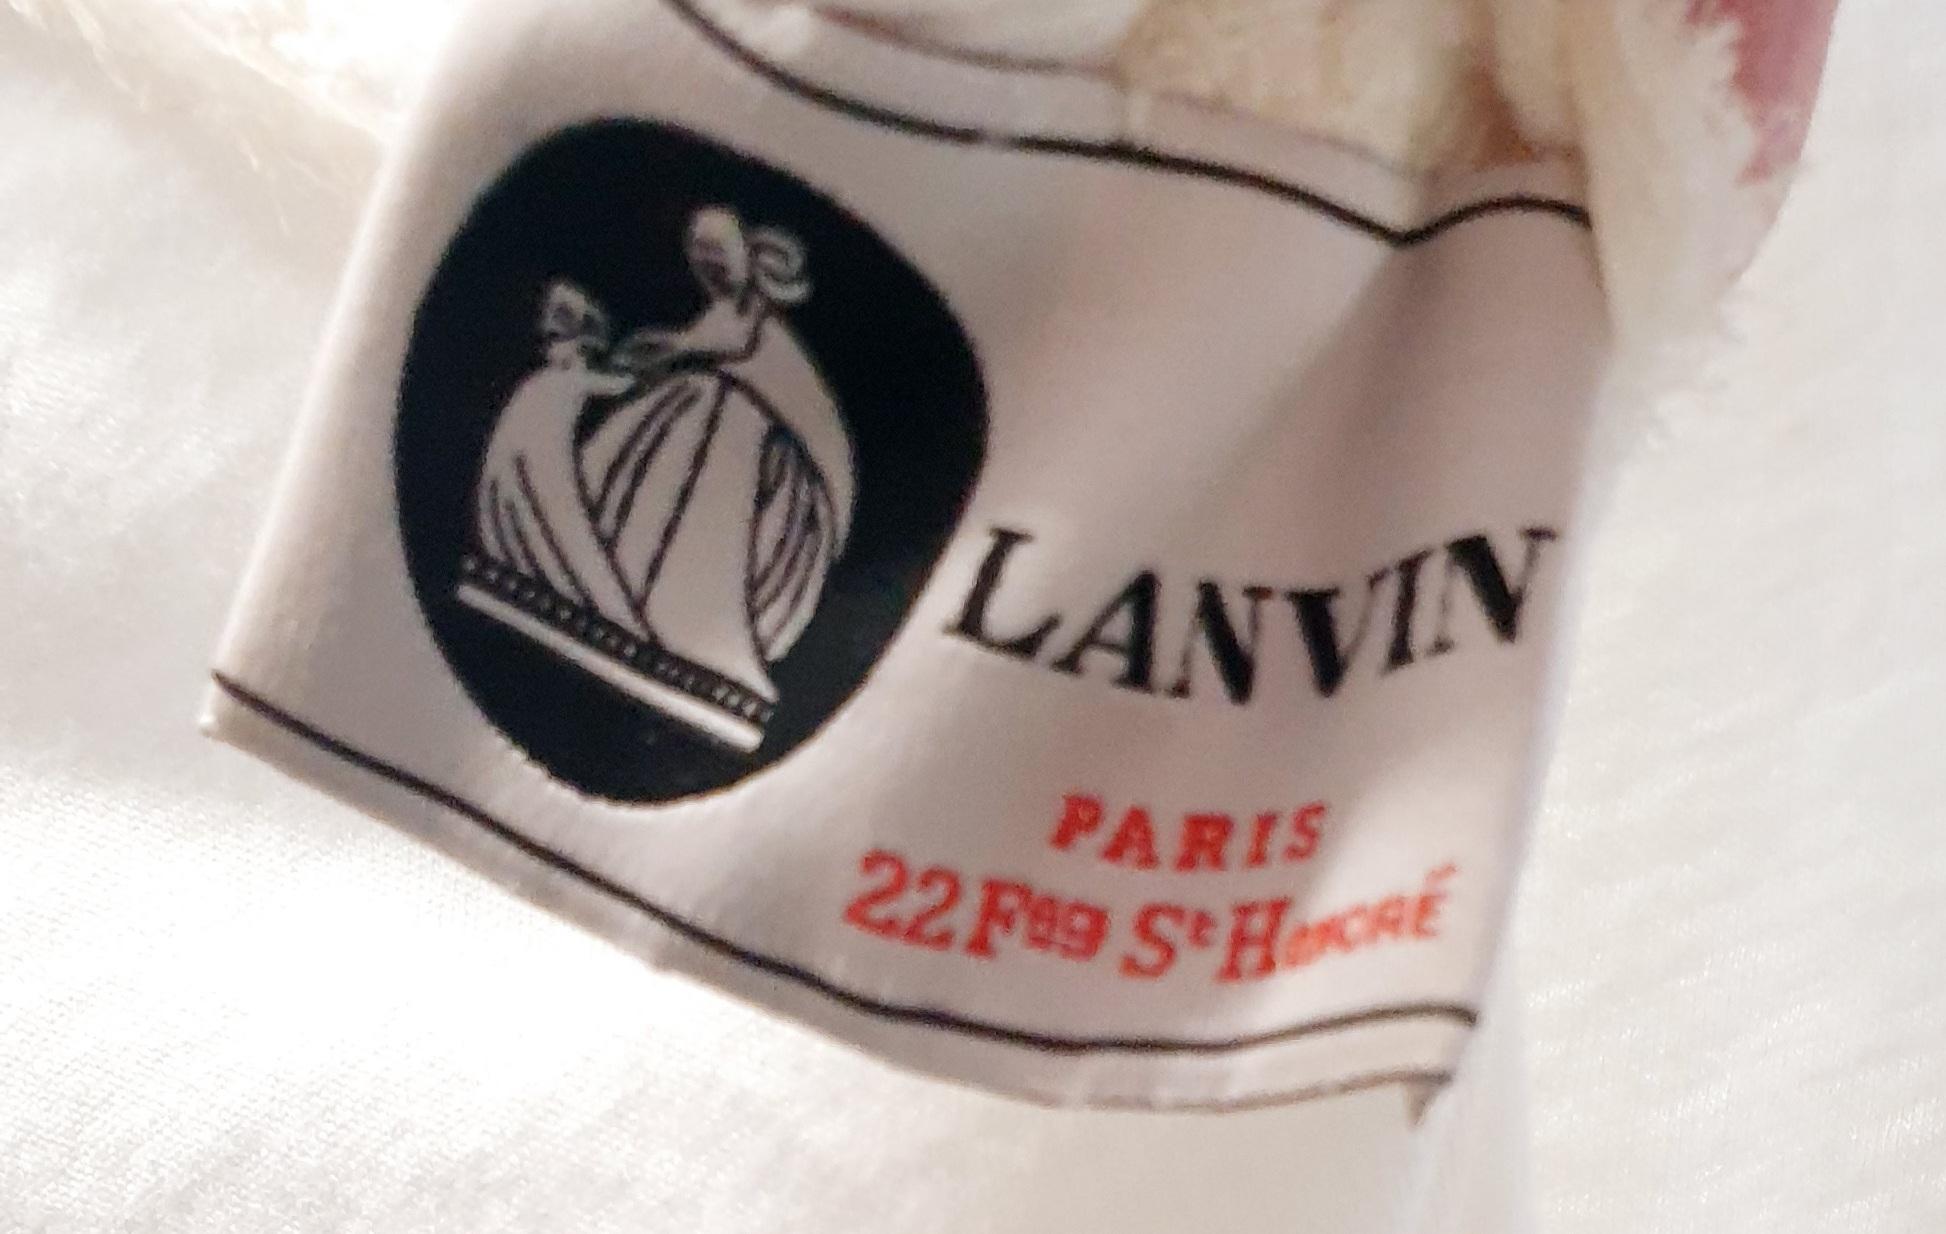 lanvin paris t shirt